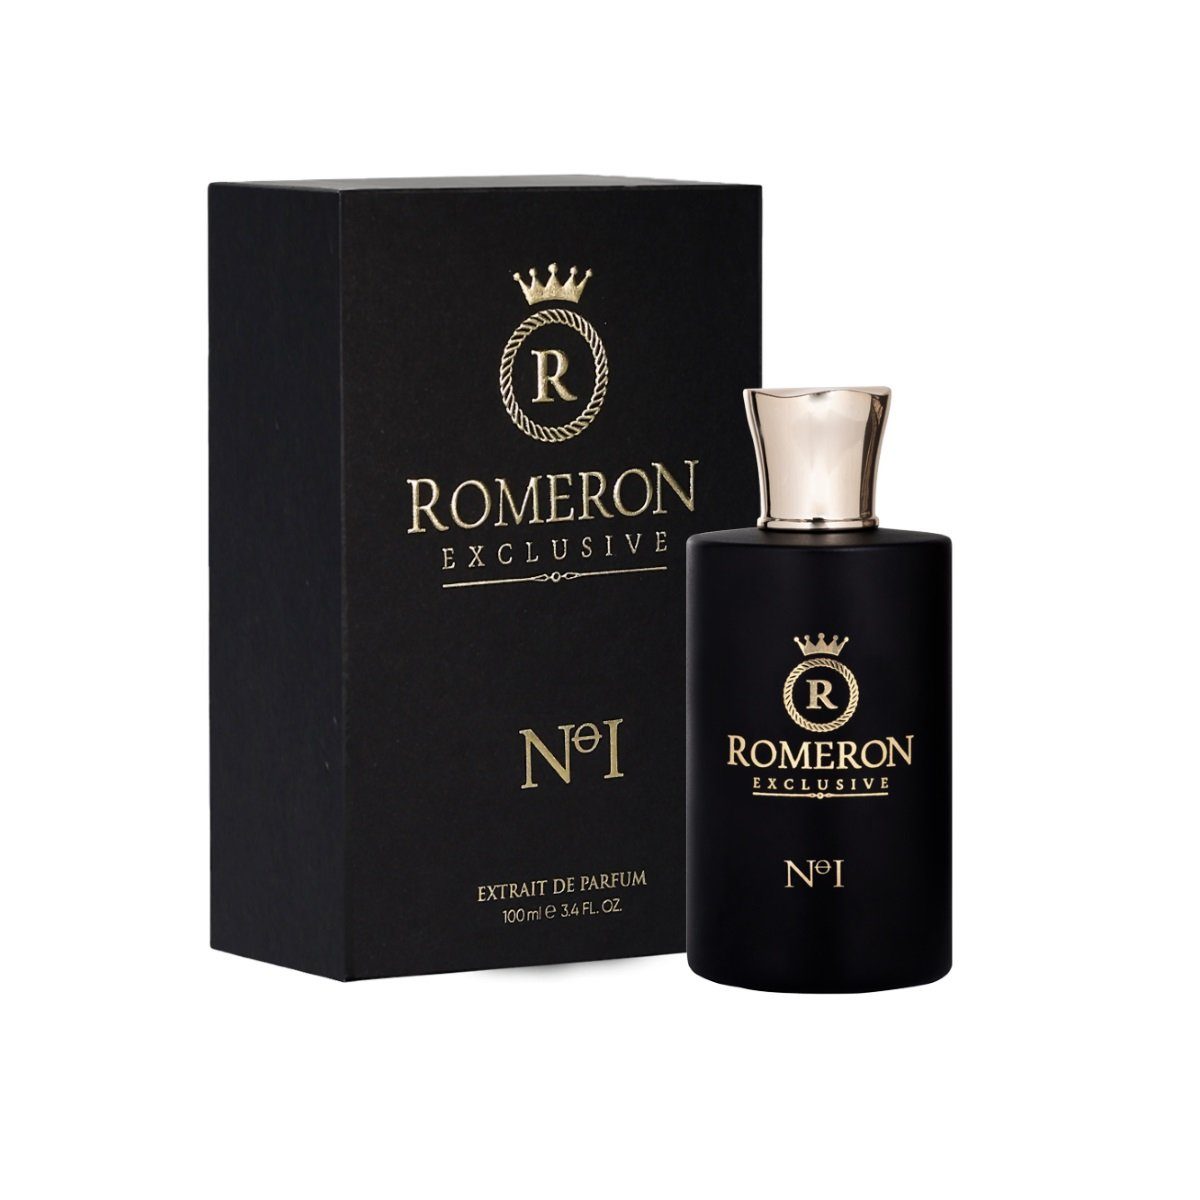 ml Exclusive No Parfum de de Romeron Romeron Extrait I 100 Parfum Eau